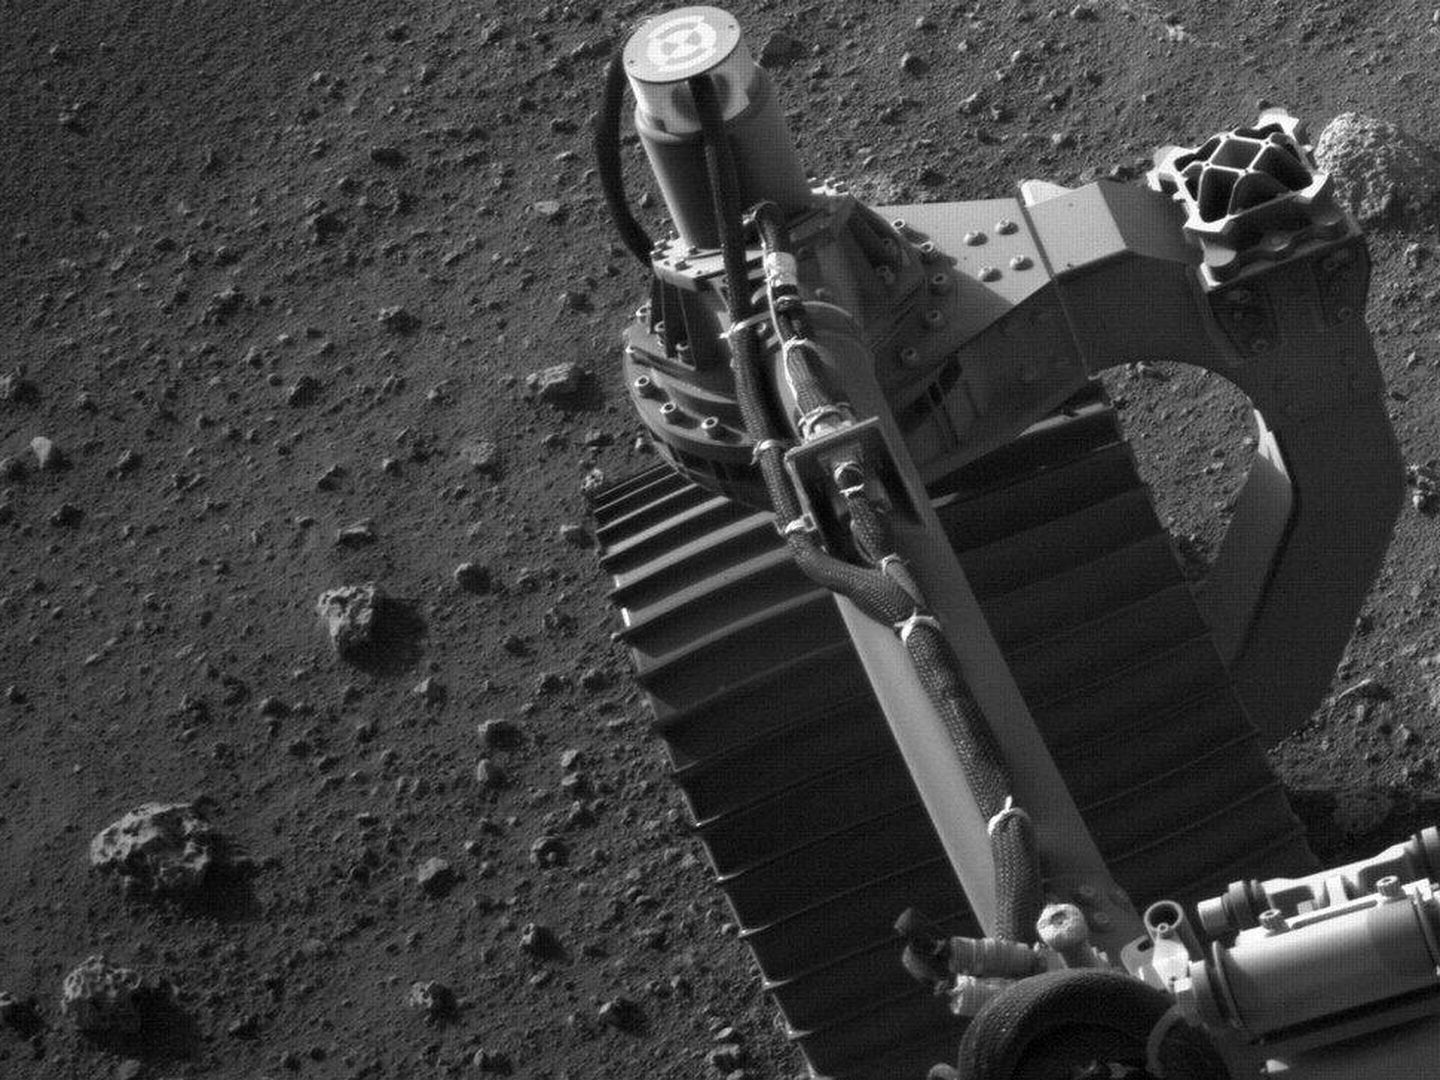 El rover trabajando en la obtención de información sobre la geología, atmósfera y las condiciones ambientales de Marte (NASA)